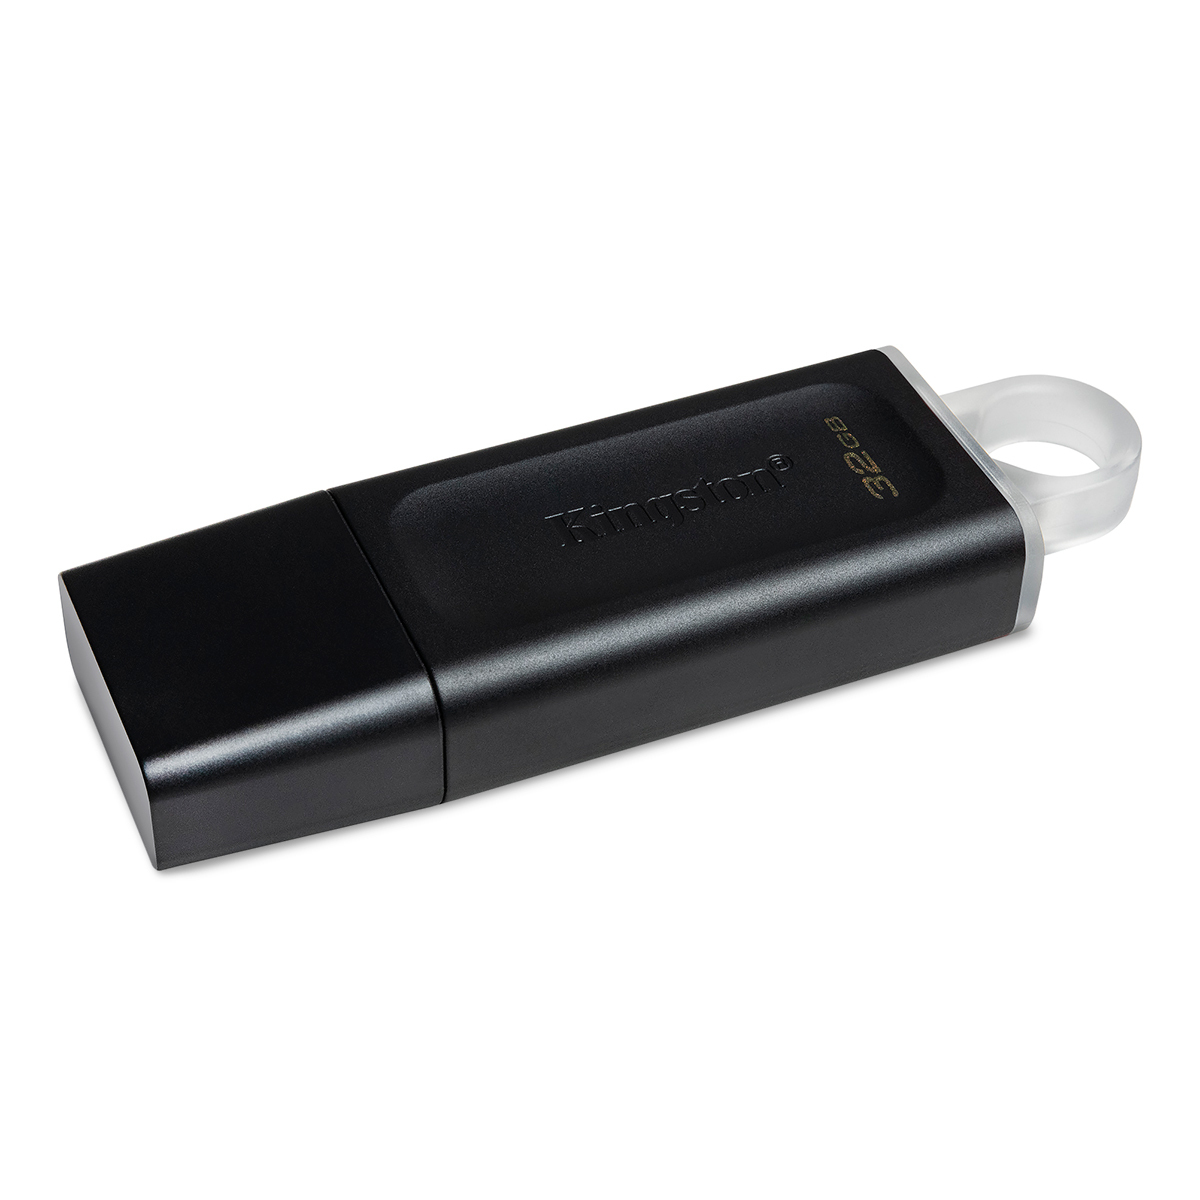 Memoria USB Atvio 32 GB Negro